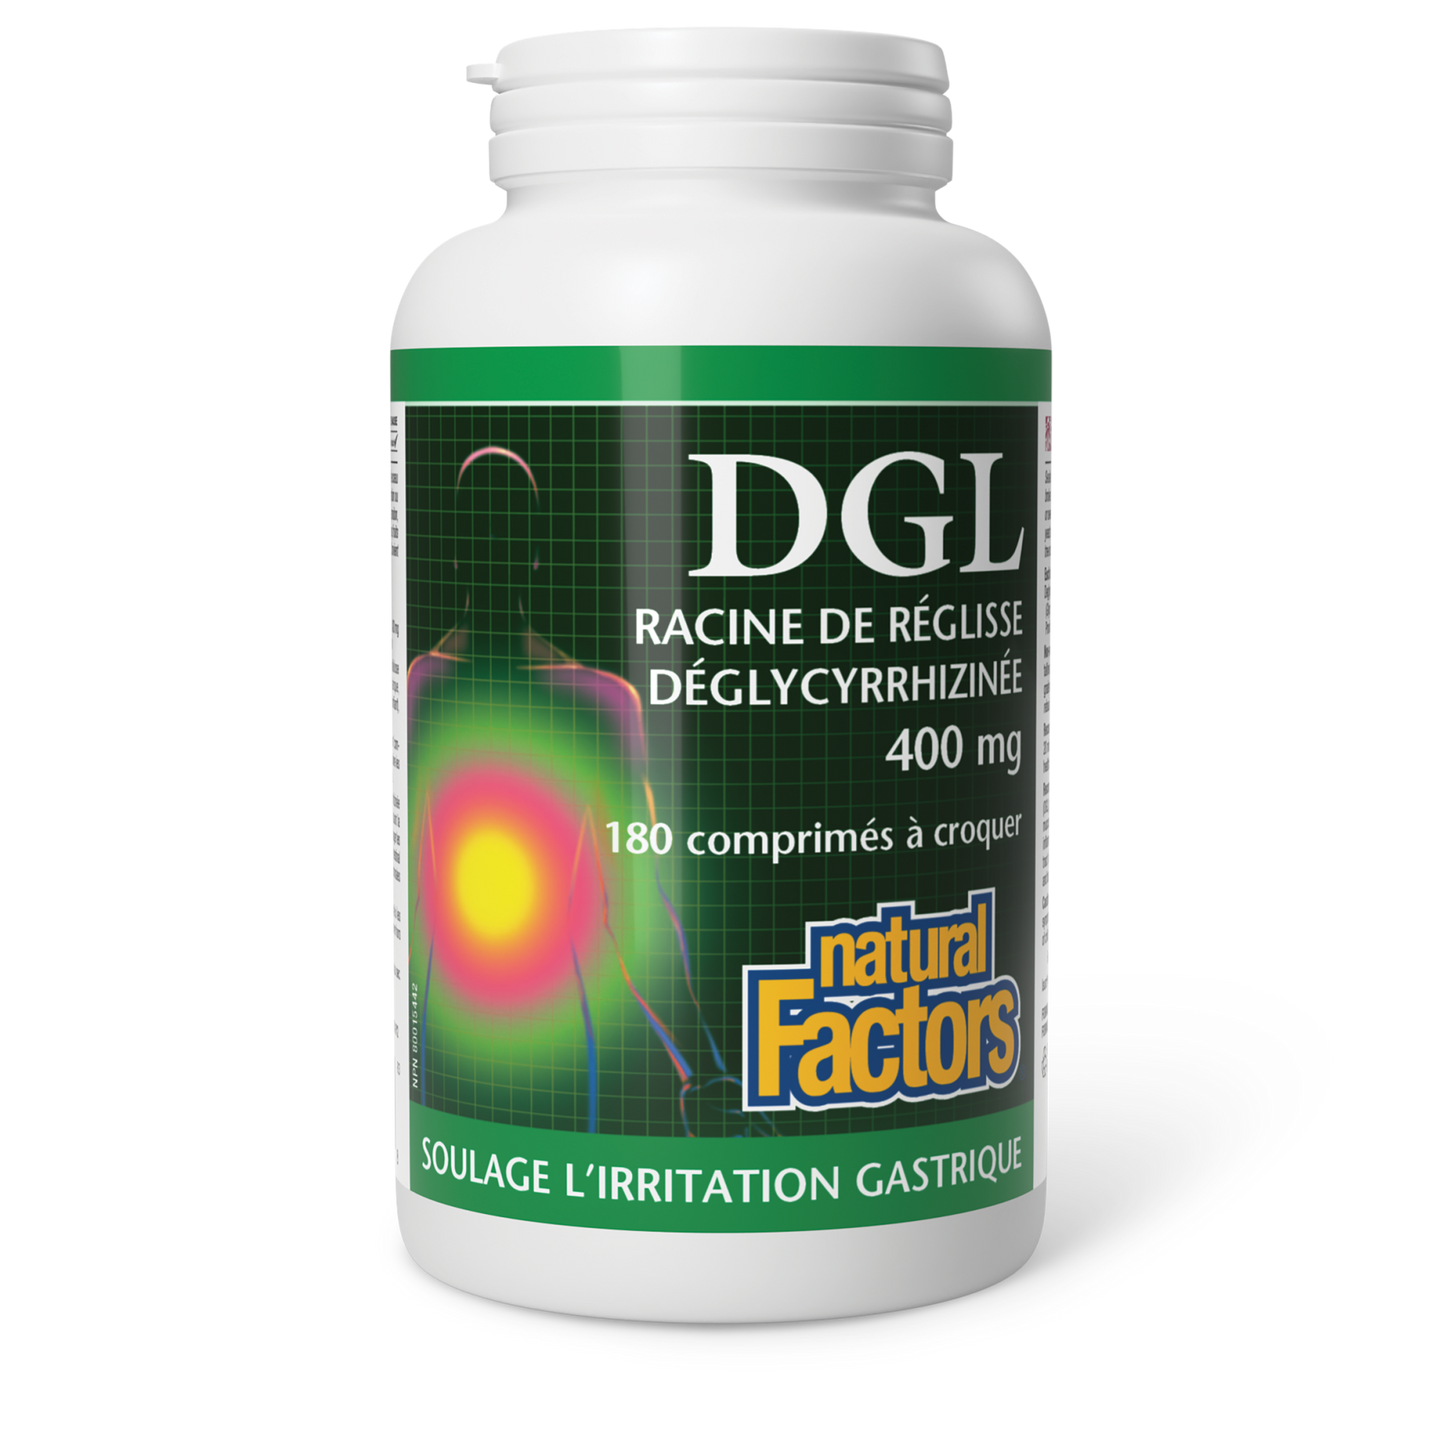 DGL Racine de réglisse déglycyrrhizinée, Natural Factors|v|image|4507